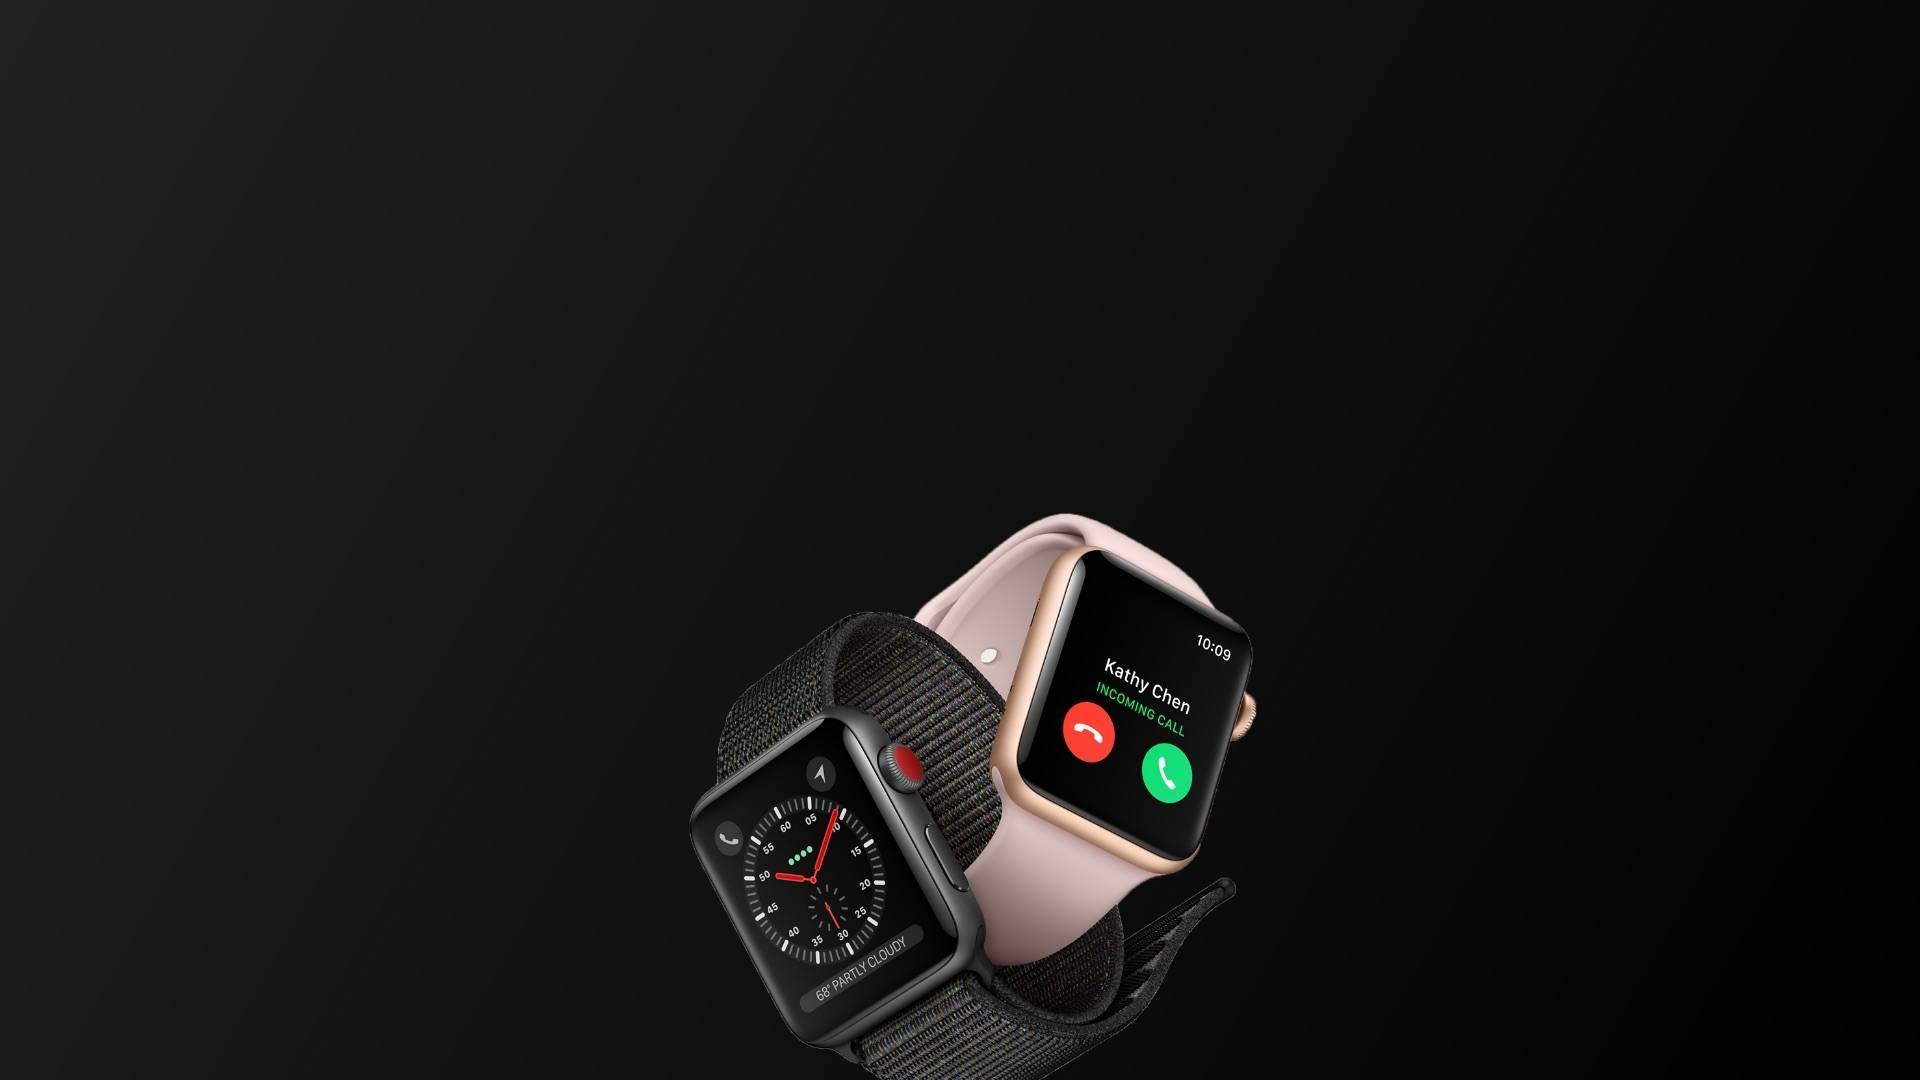 Обзор apple watch series 3: новая версия самых популярных умных часов